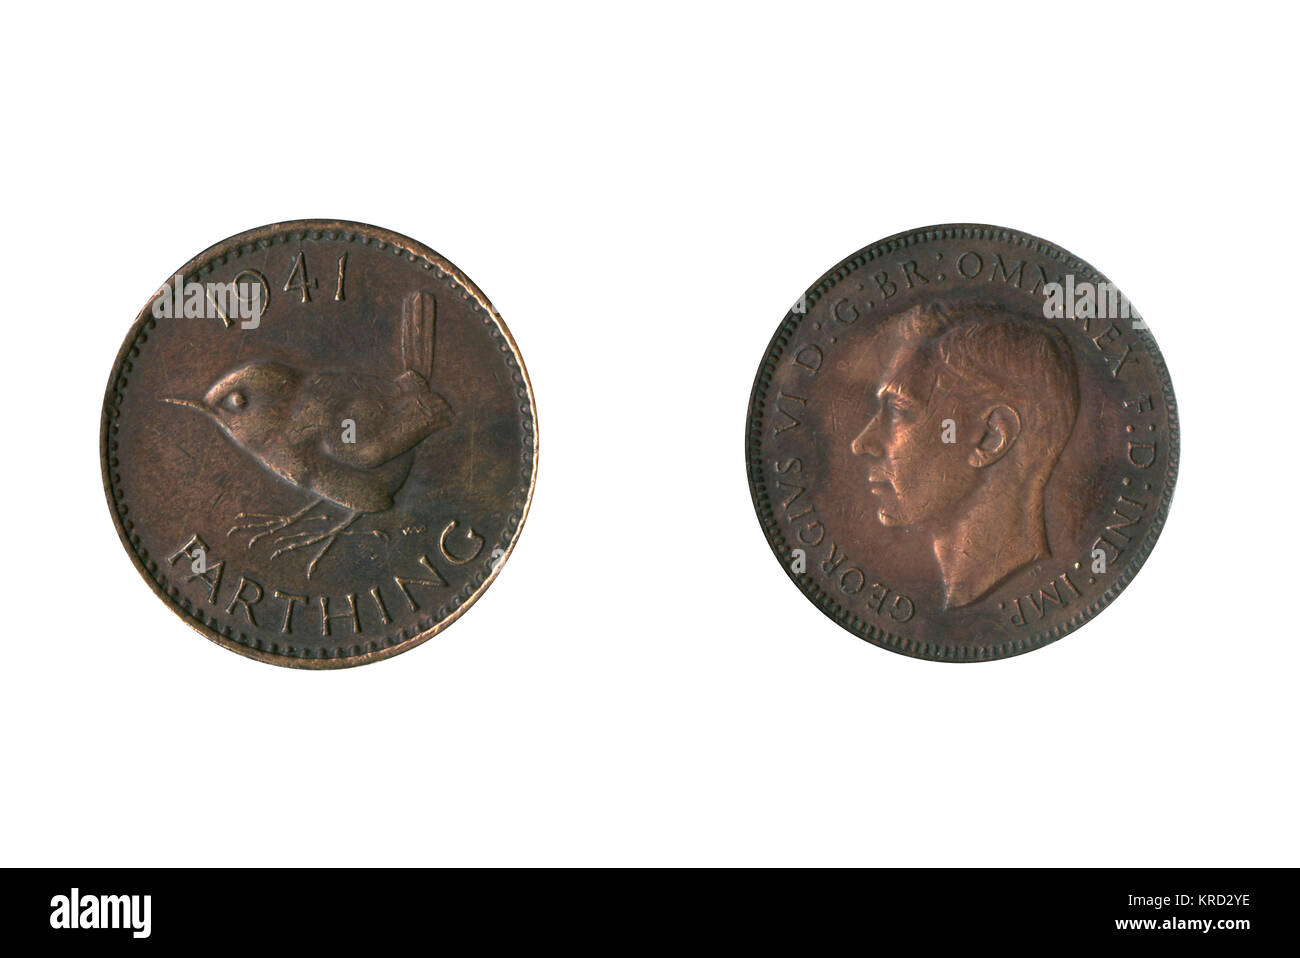 La monnaie, George VI farthing (un quart de penny). Date : 1941 Banque D'Images